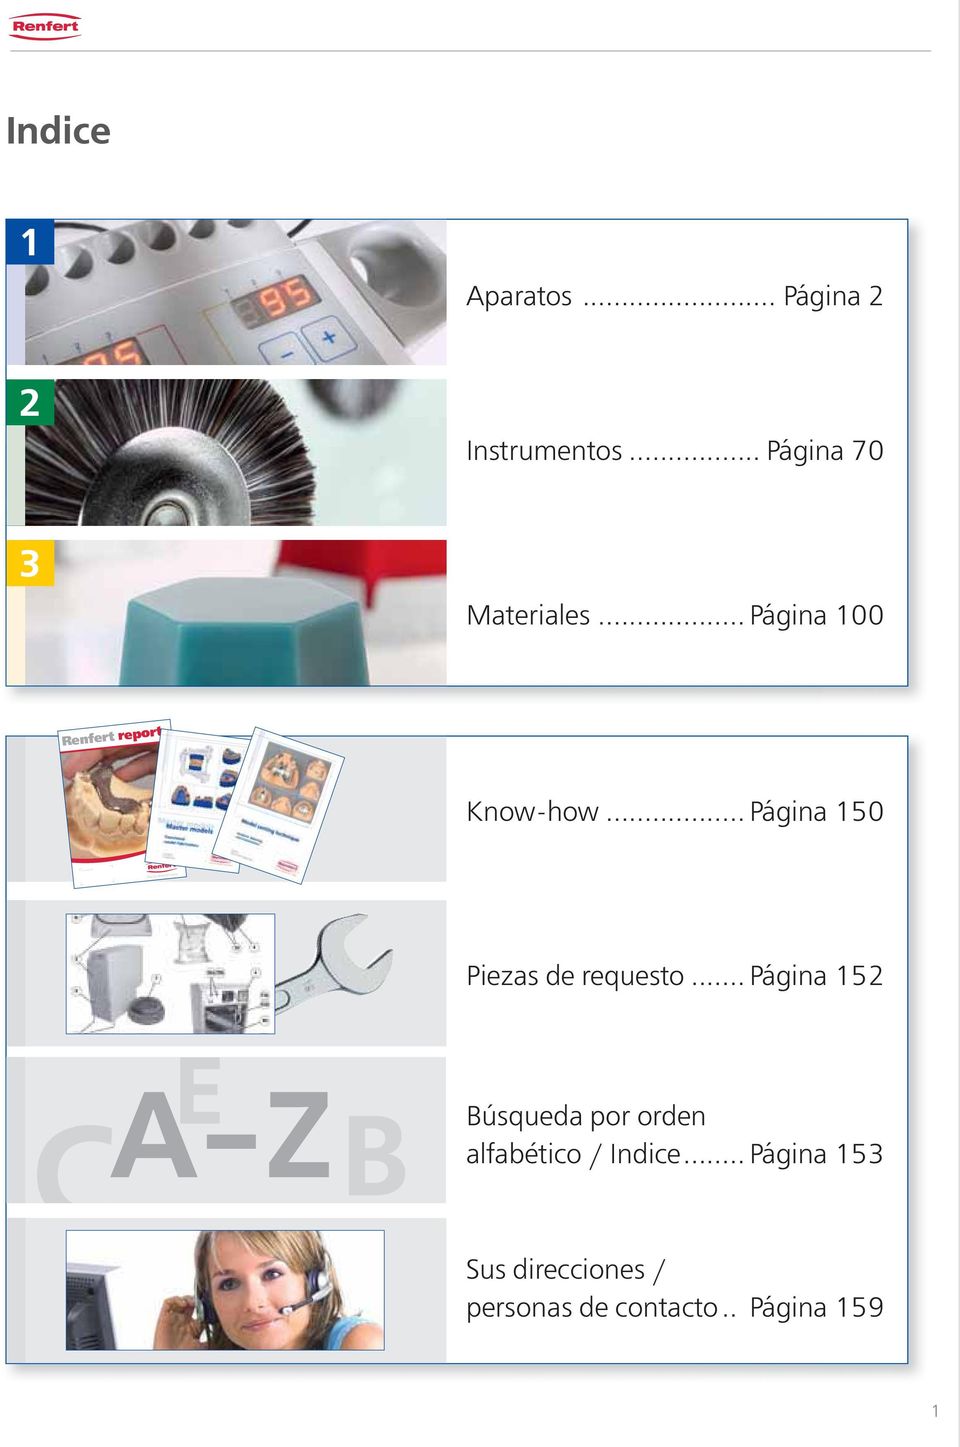 .. Página 50 Ideas for dental technology Piezas de requesto.